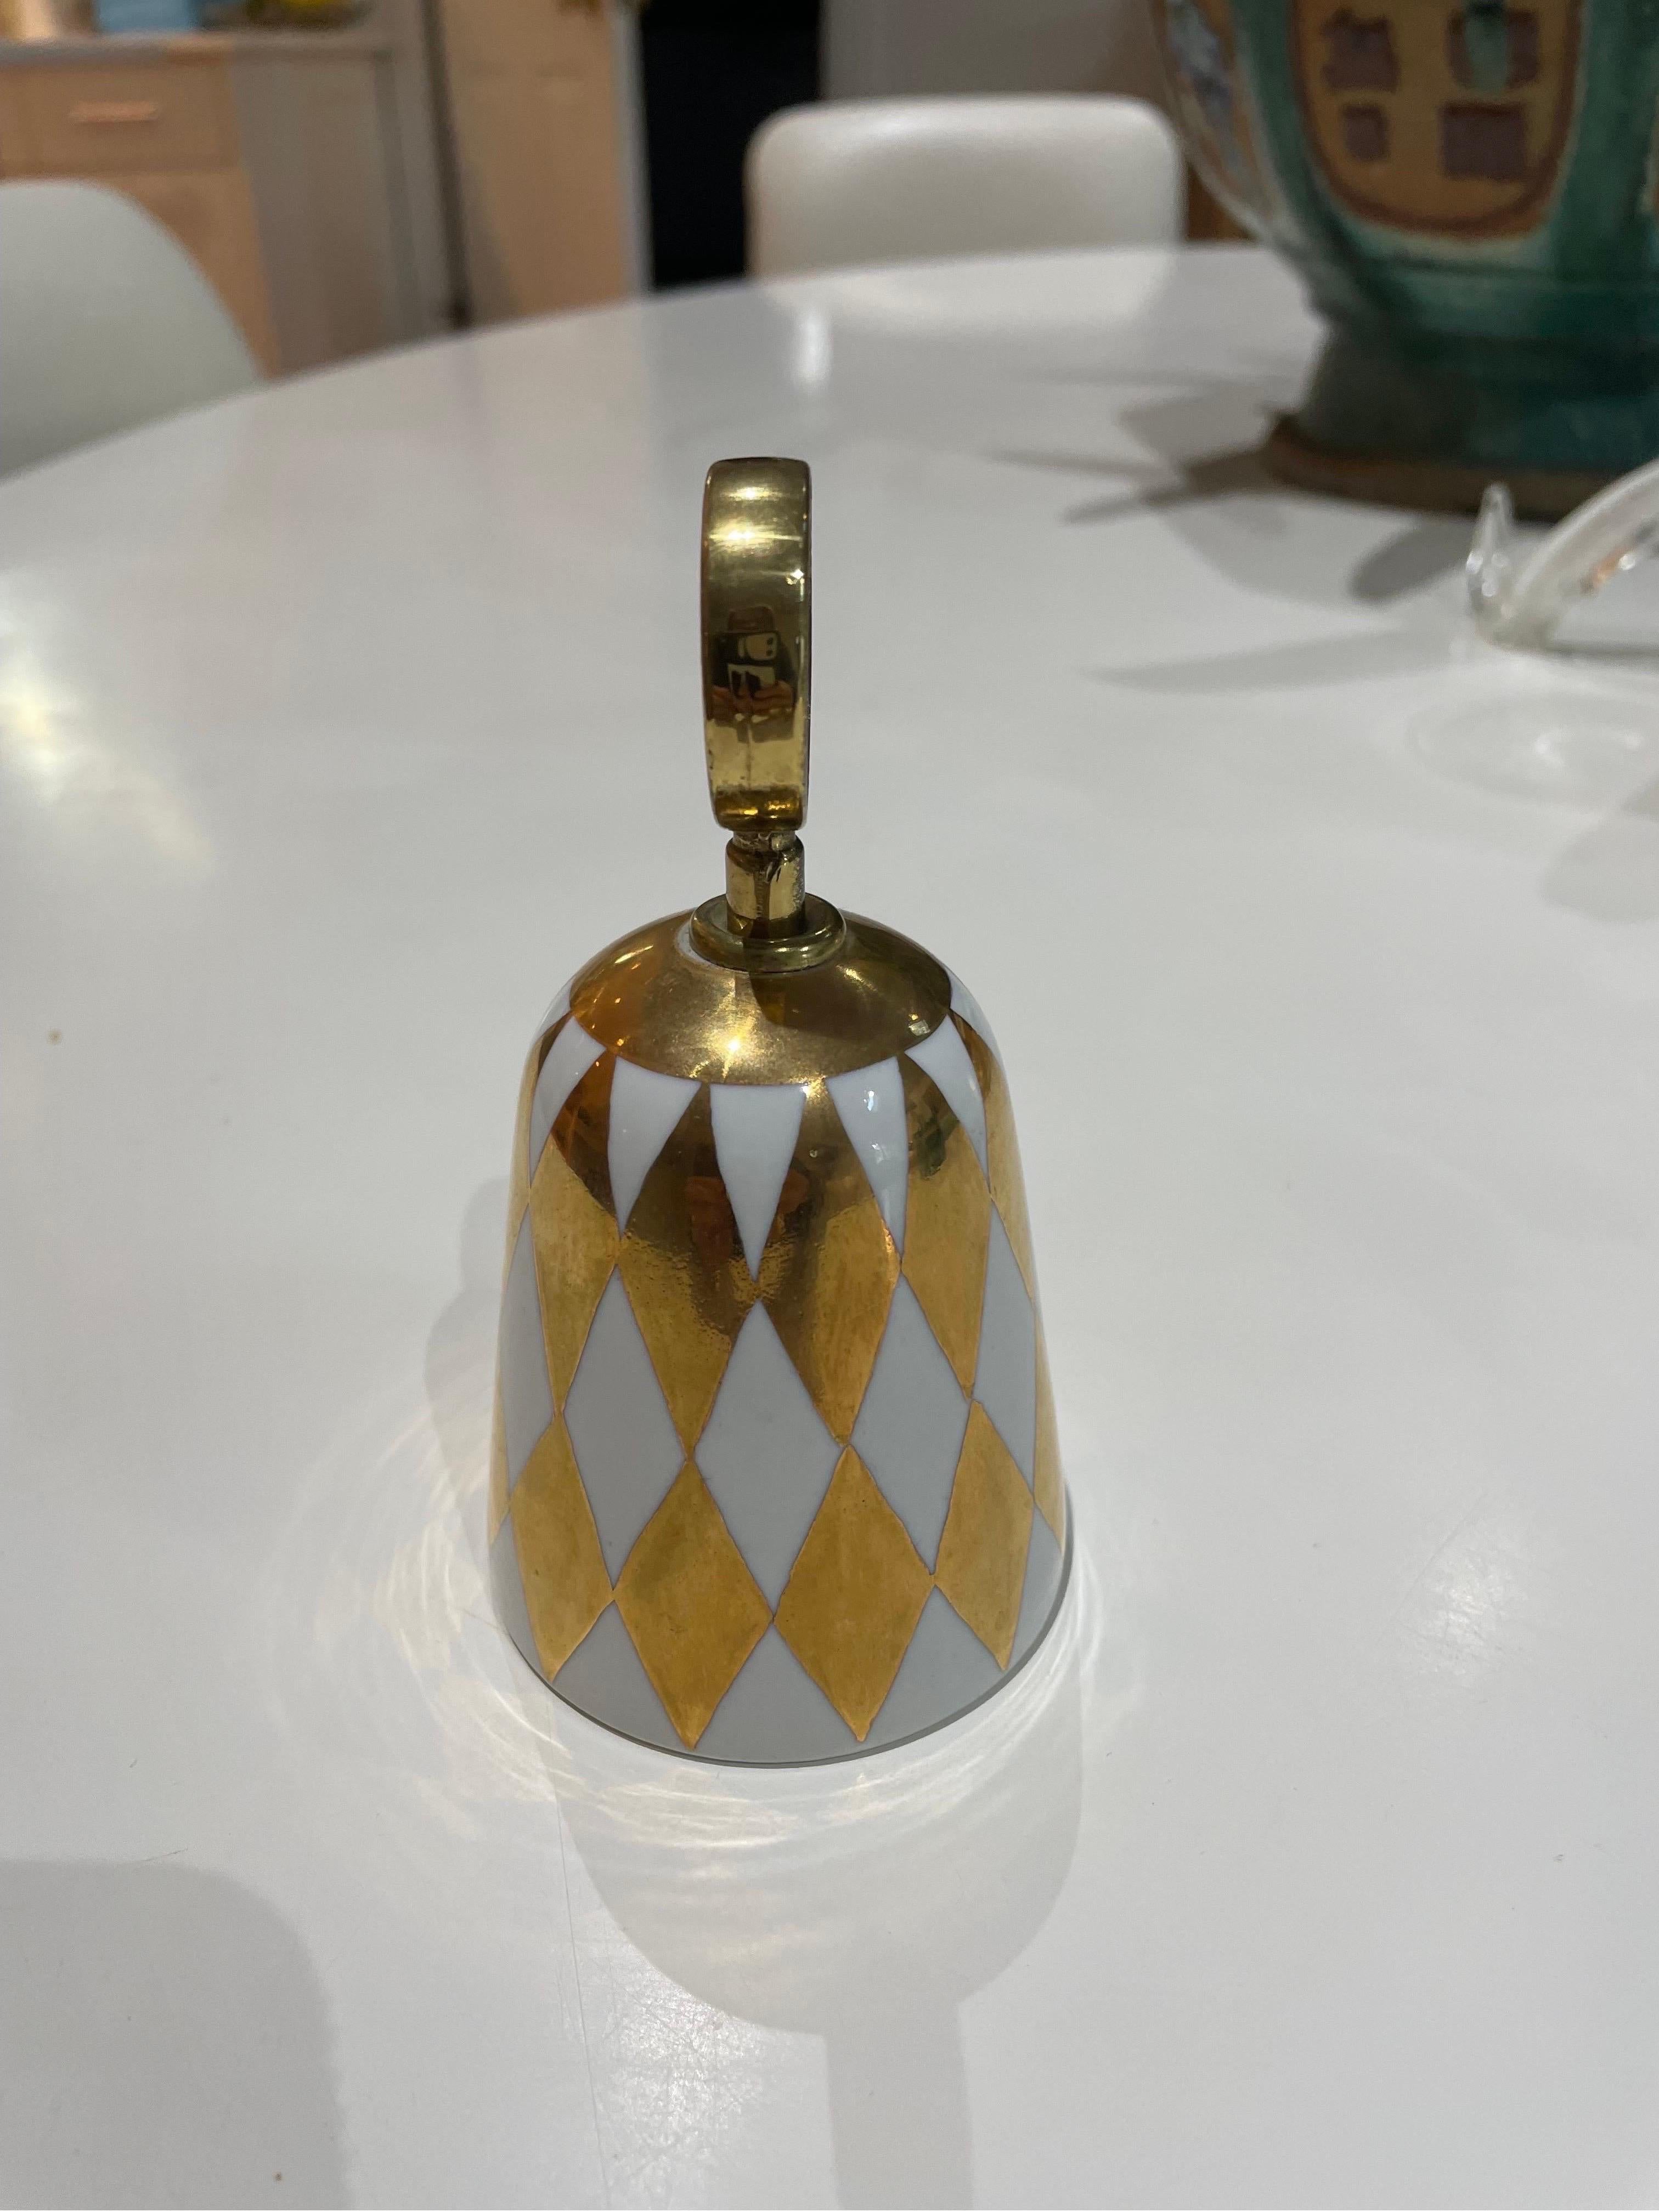 Dies ist eine einzigartige und seltene Fornasetti Gold und weißes Porzellan Glocke aus Italien.